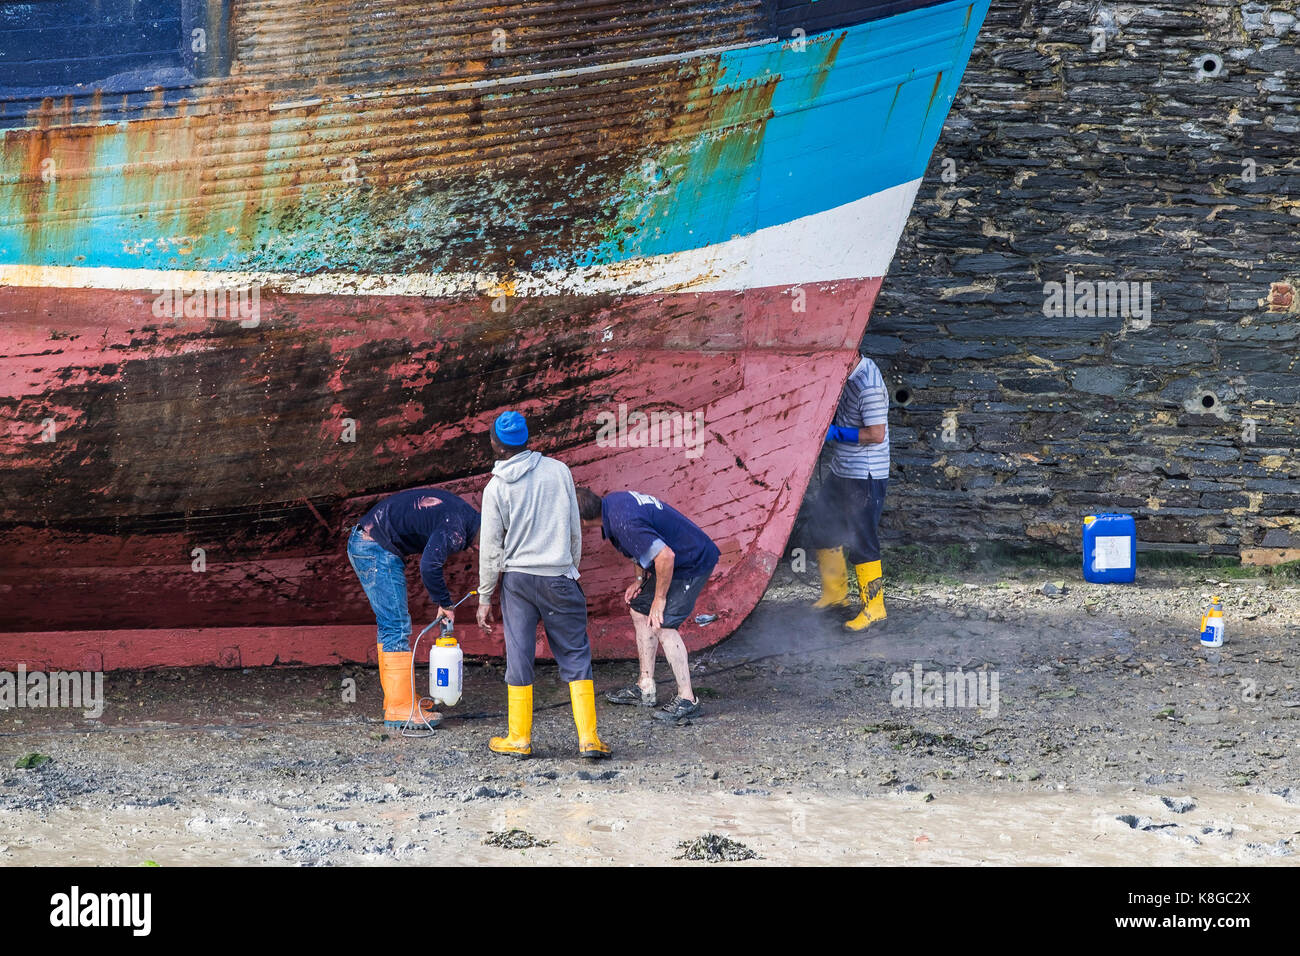 Les travailleurs de l'industrie de la pêche - l'inspection de la coque d'un chalutier à marée basse à Padstow Harbour sur la côte nord des Cornouailles. Banque D'Images